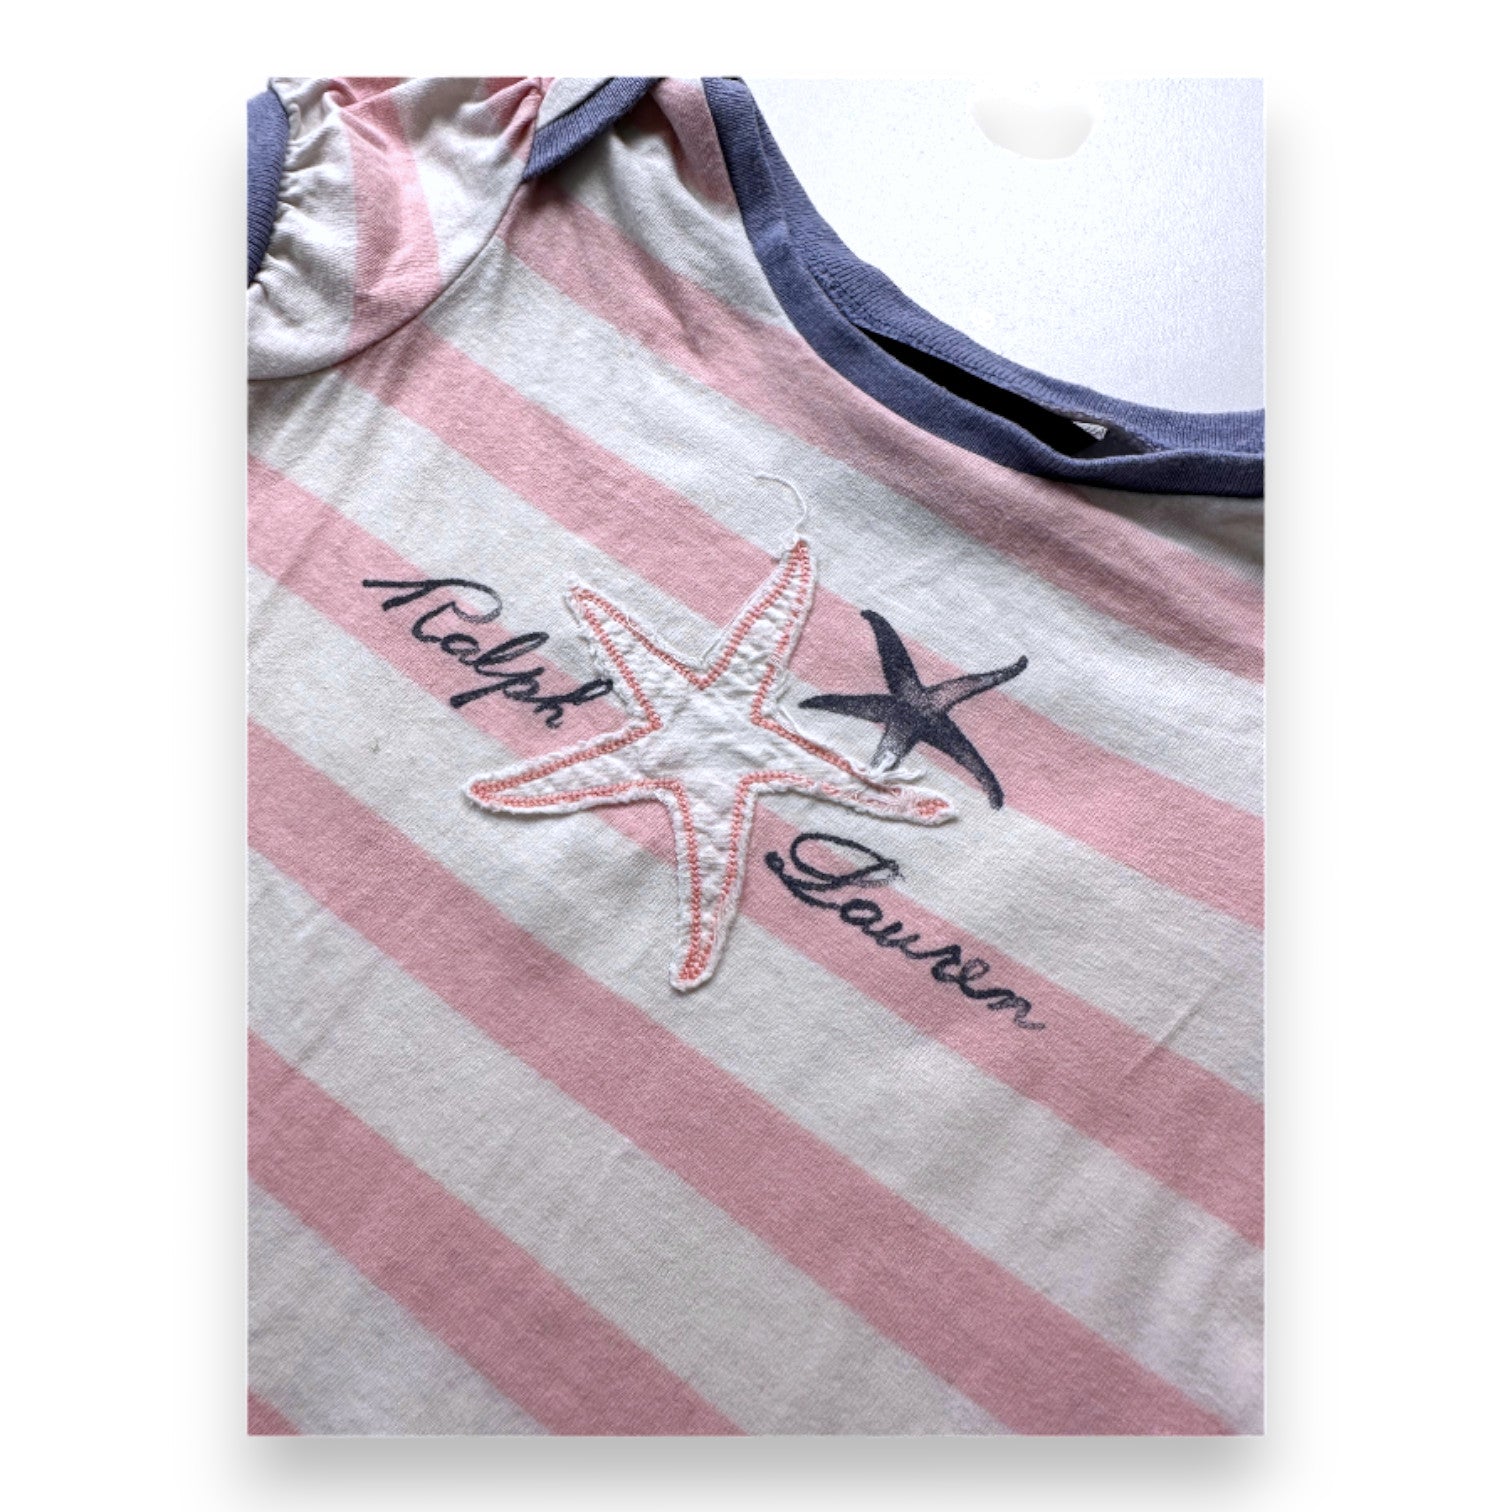 RALPH LAUREN - T-shirt rose et blanc à rayures avec imprimés - 18 mois